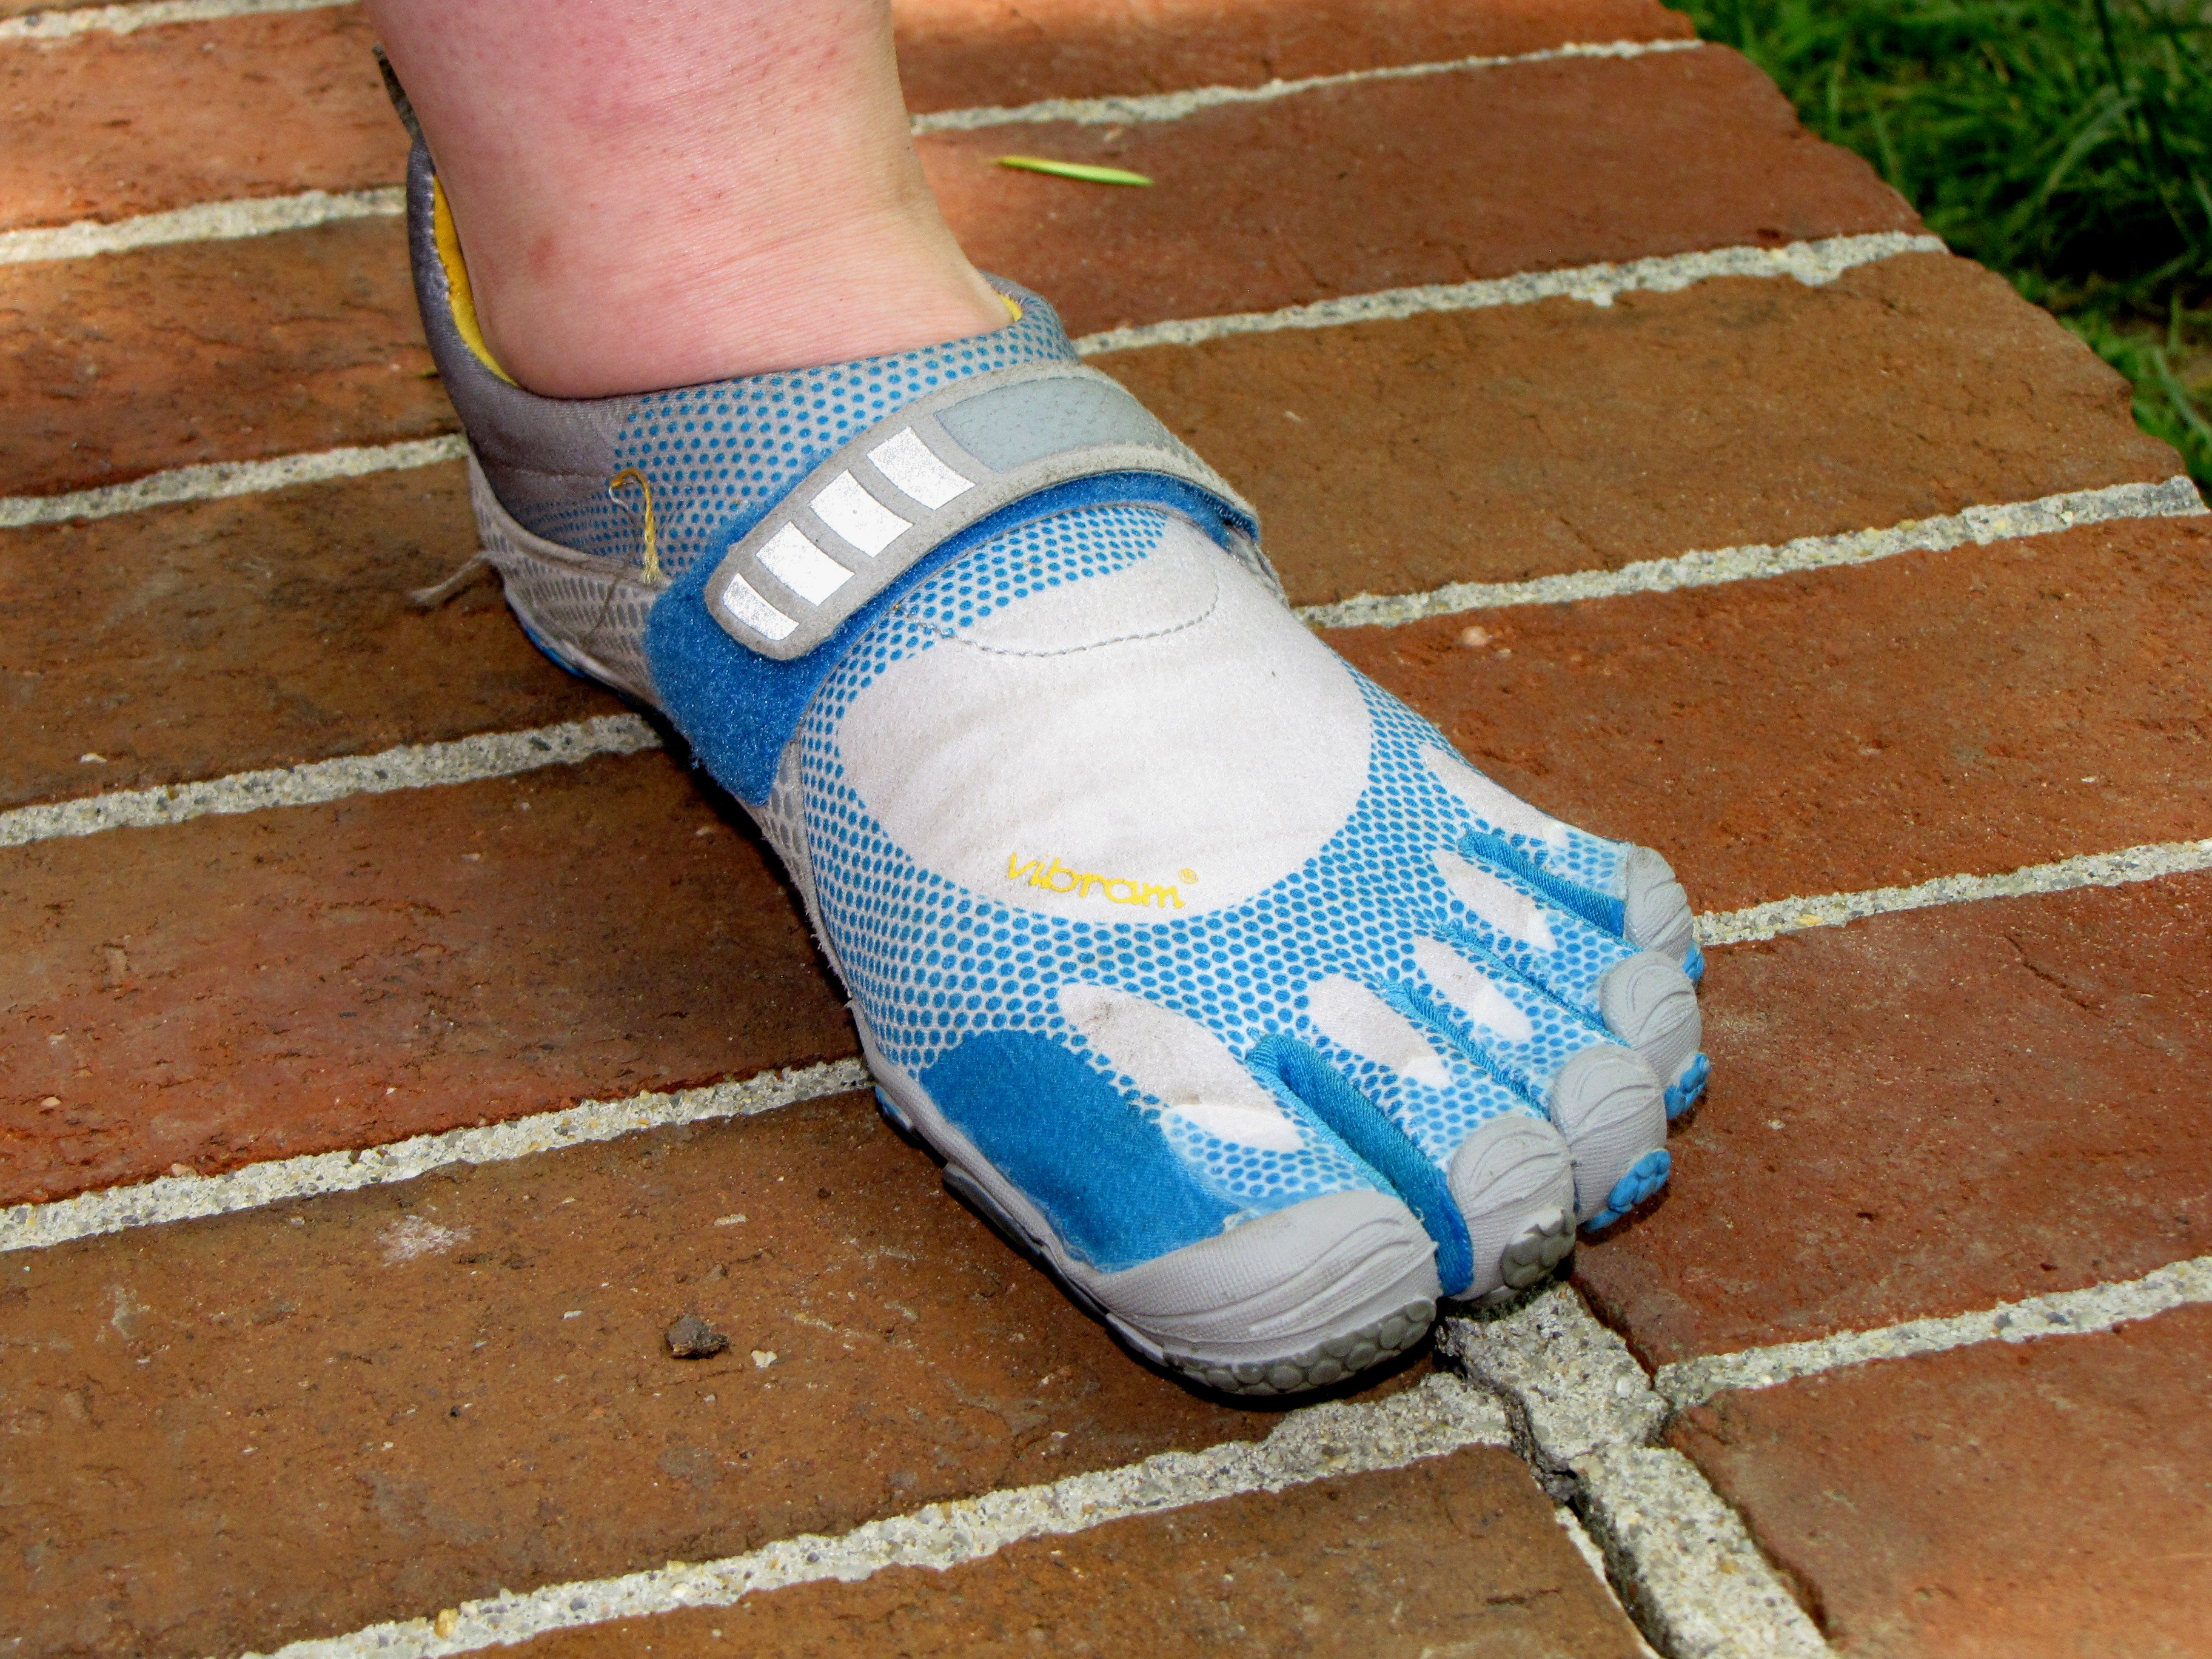 Calzado minimalista o barefoot- Qué es, características, referencias